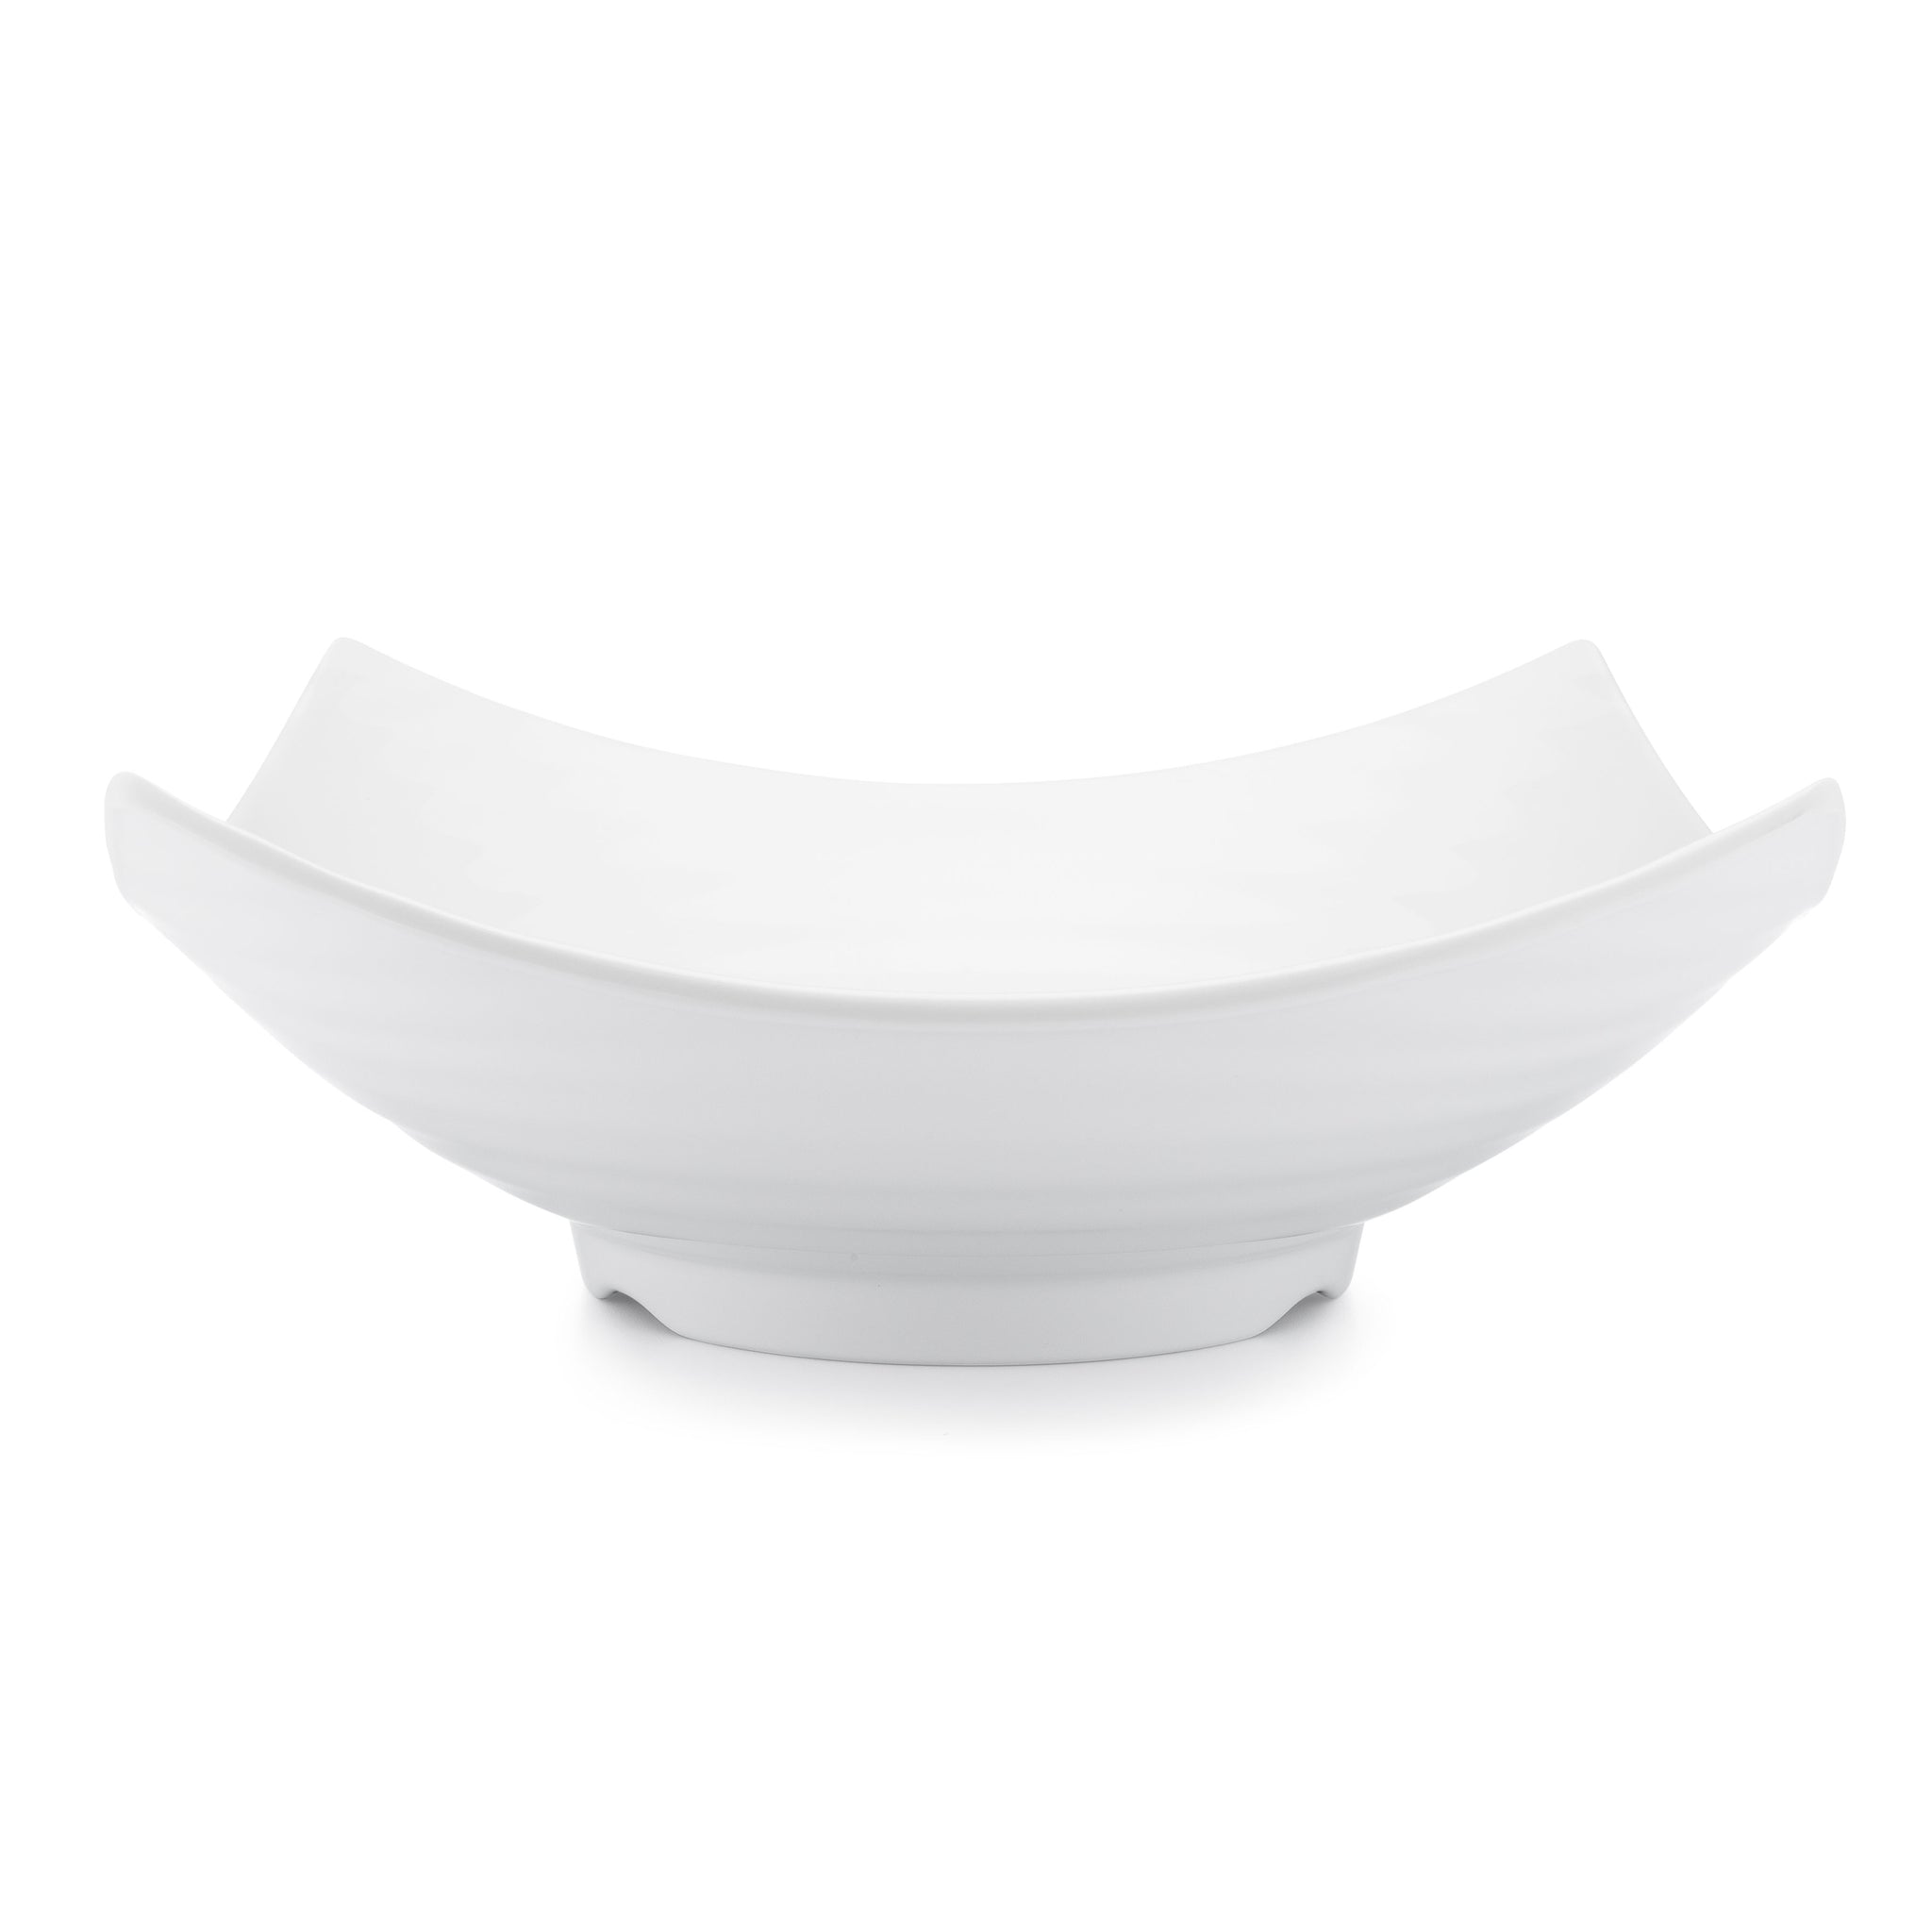 Zen White Melamine Serving Bowl